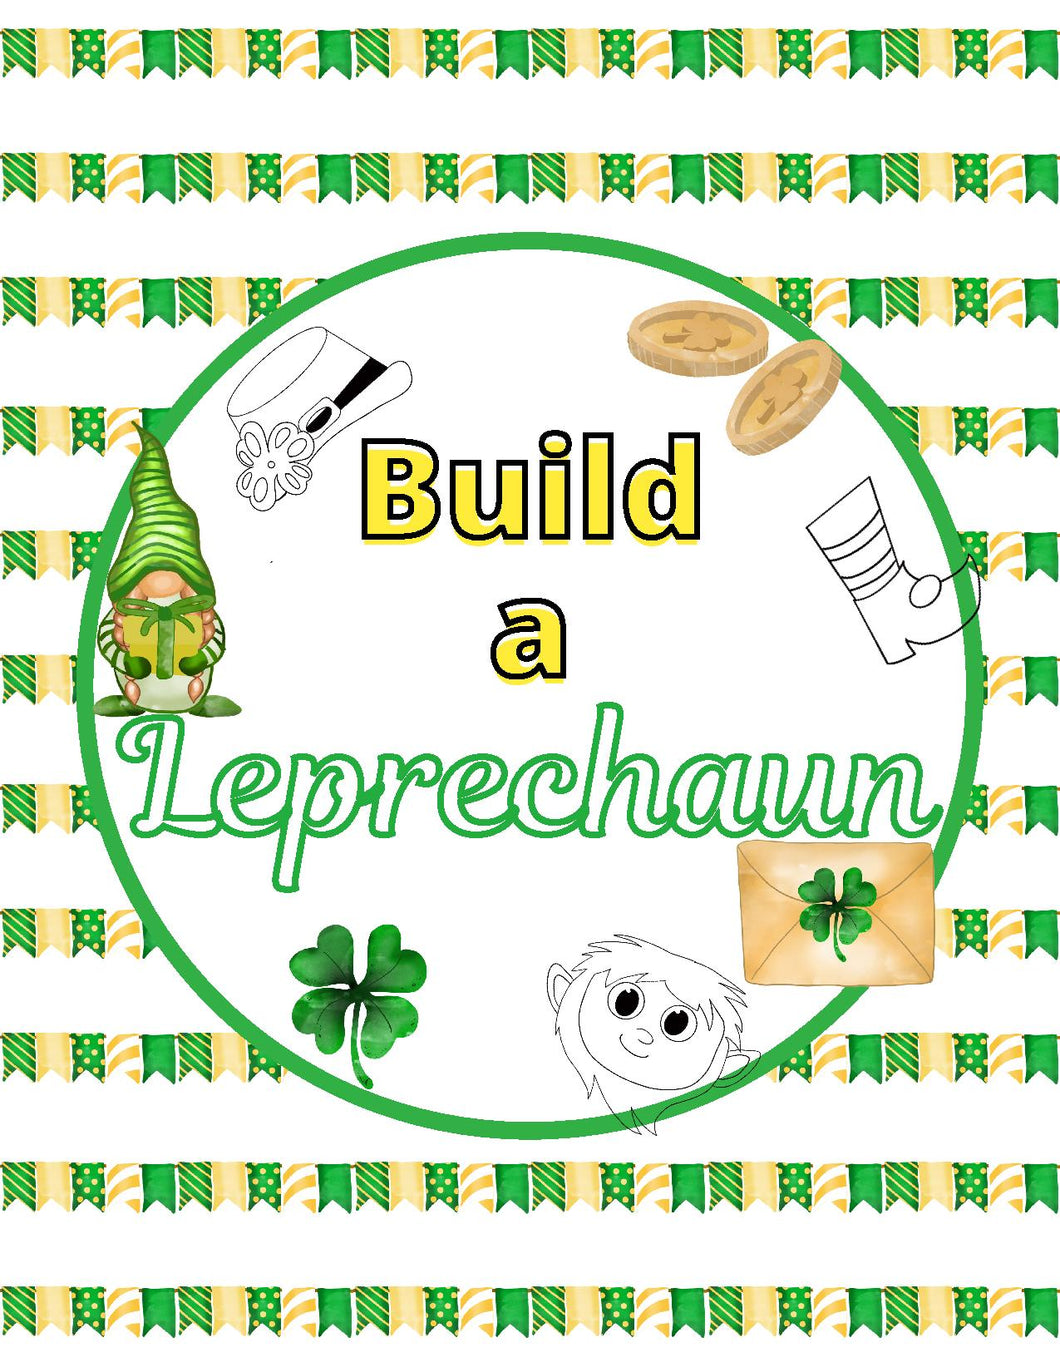 Build a Leprechaun